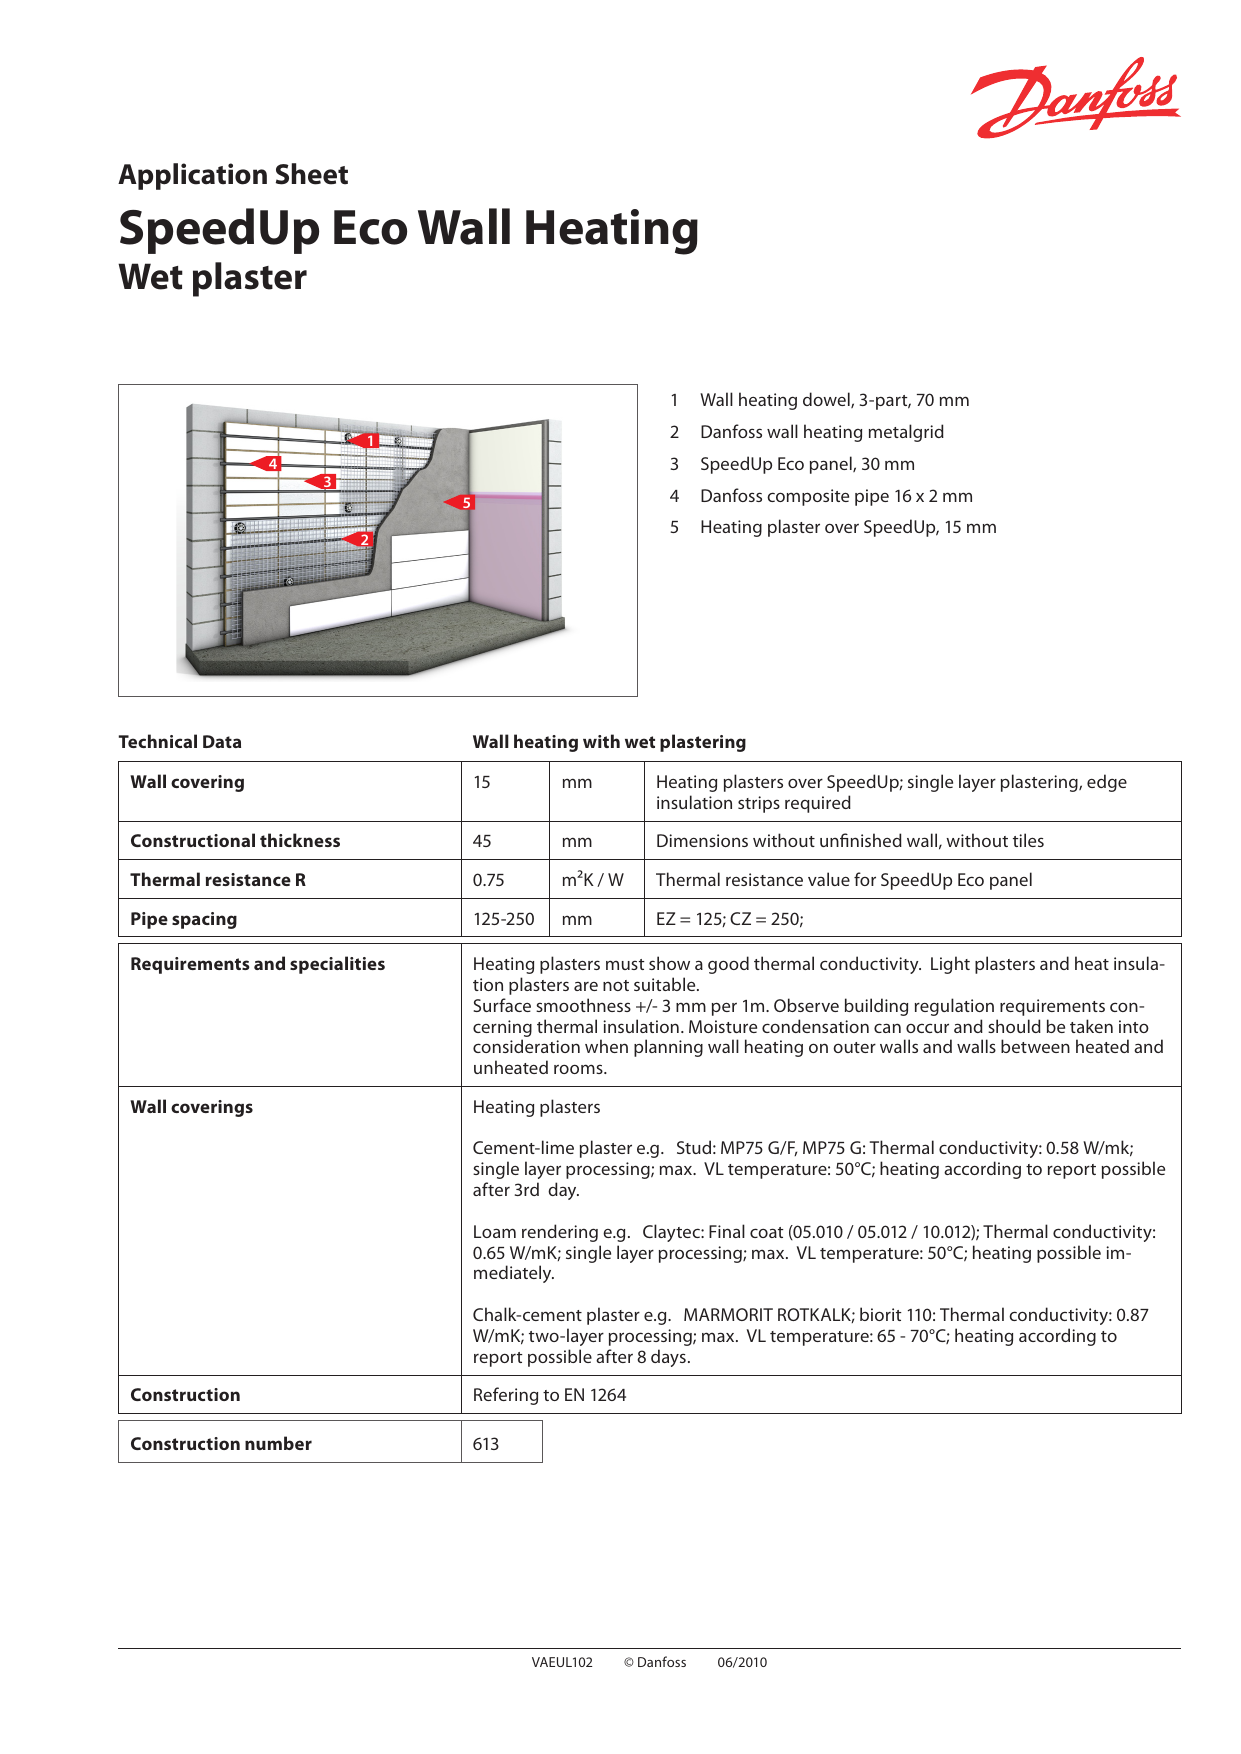 Danfoss Speedup Eco Wall Heating Wet Plaster User Guide Manualzz